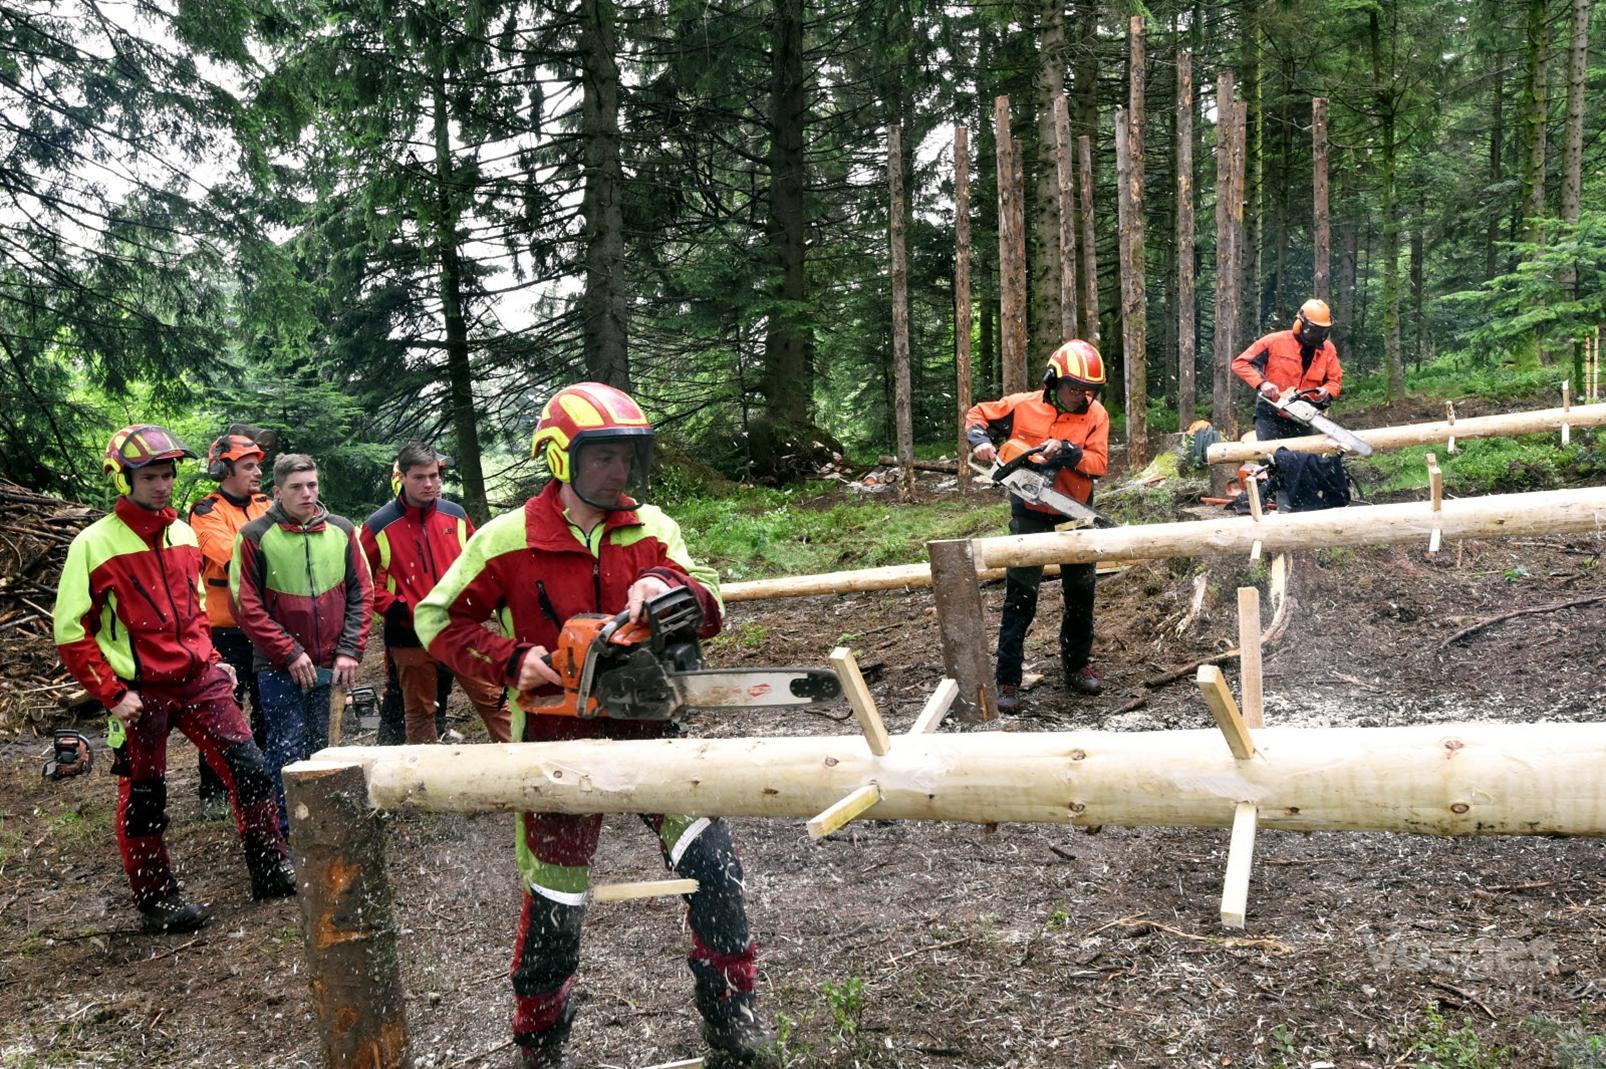 Fête forestière sur les métiers du bois, à (re)découvrir à Sapois.